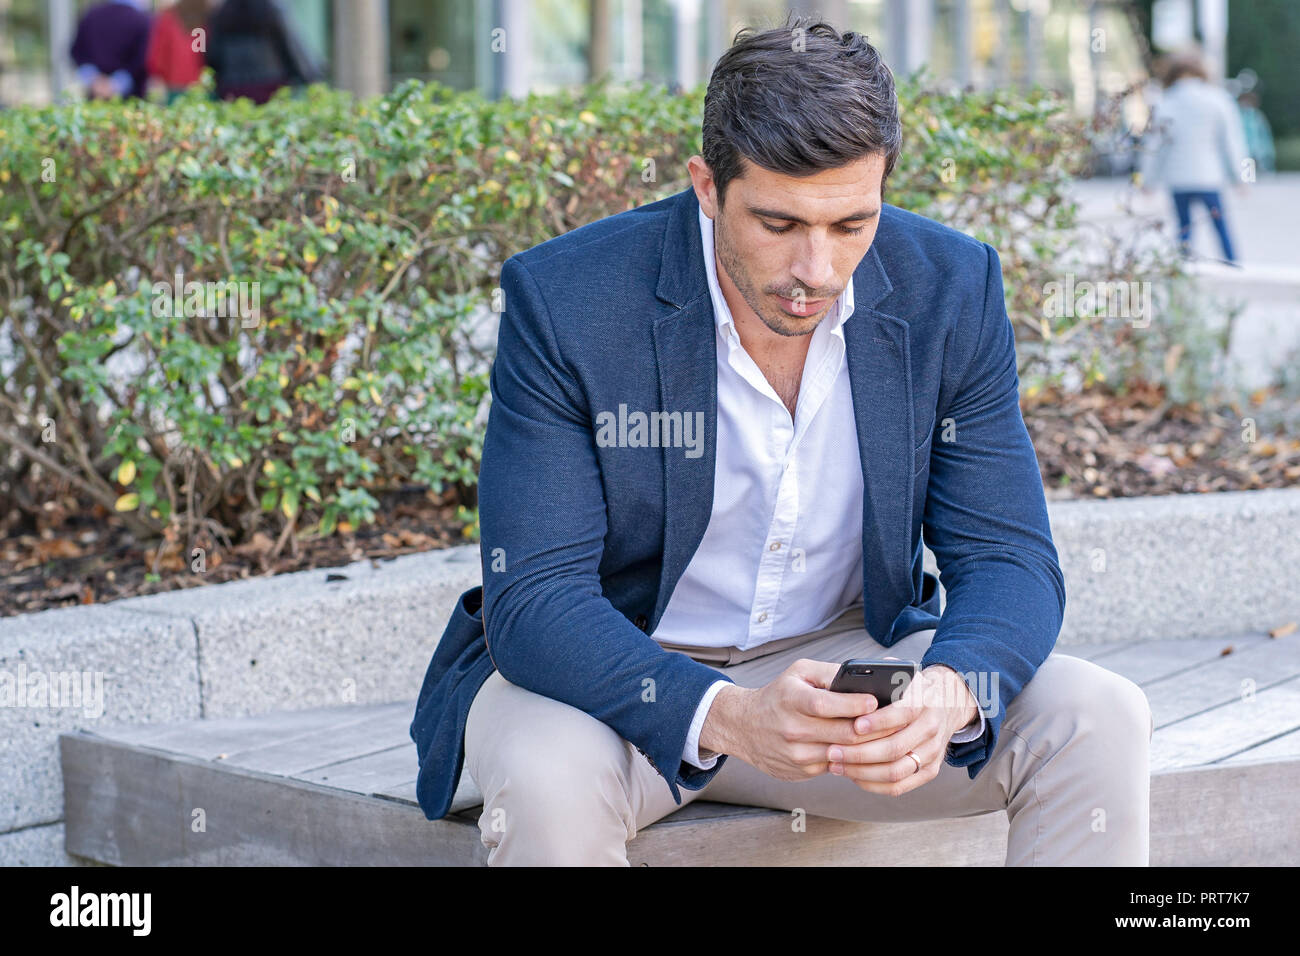 Attraente, imprenditore moderno a parlare e scrivere sul suo telefono cellulare. Imprenditore di successo facendo il lavoro. Foto Stock